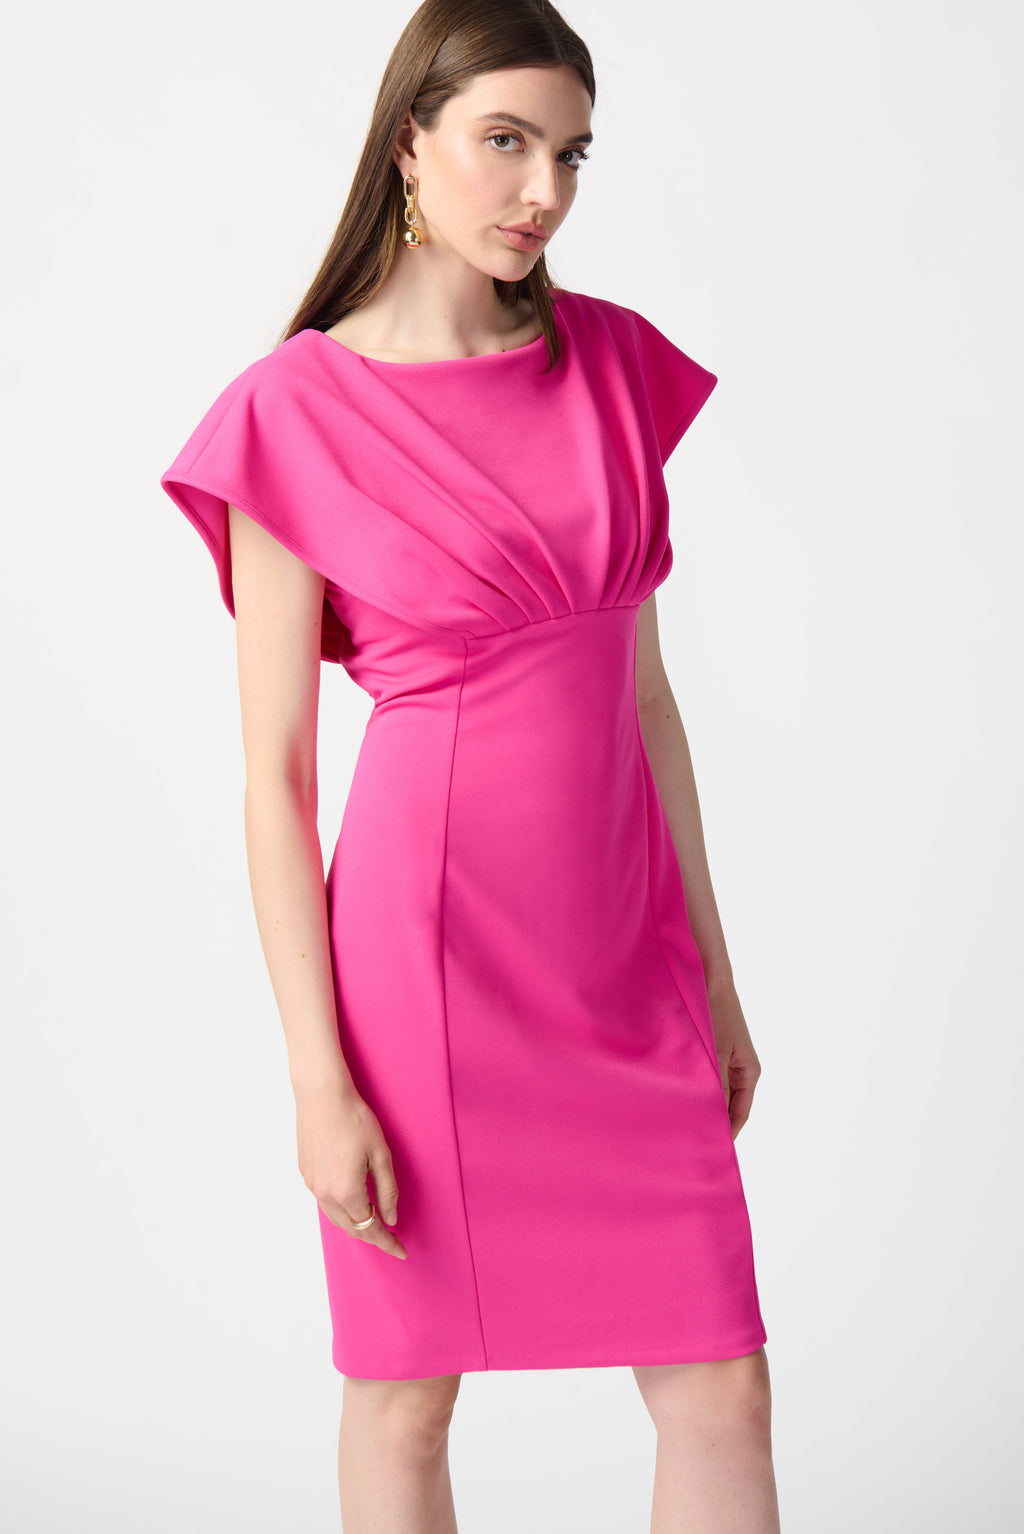 Joseph Ribkoff Ultra Pink Sheath Dress Style 241233